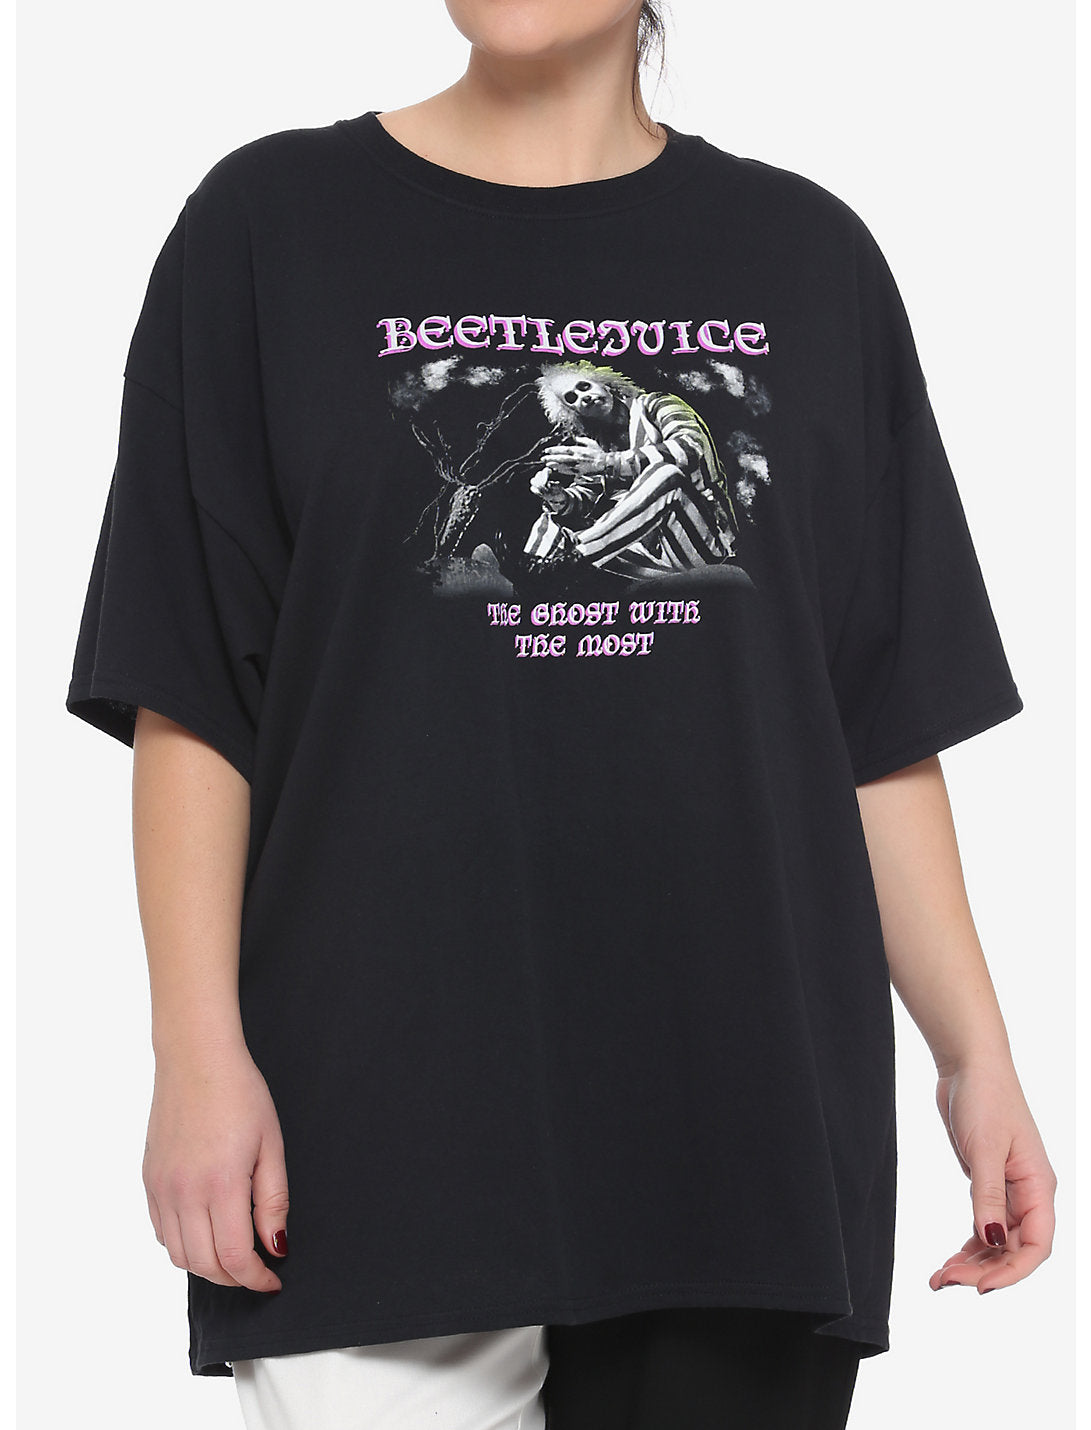 Camiseta Beetlejuice Ghost para mujer con la camiseta más extragrande